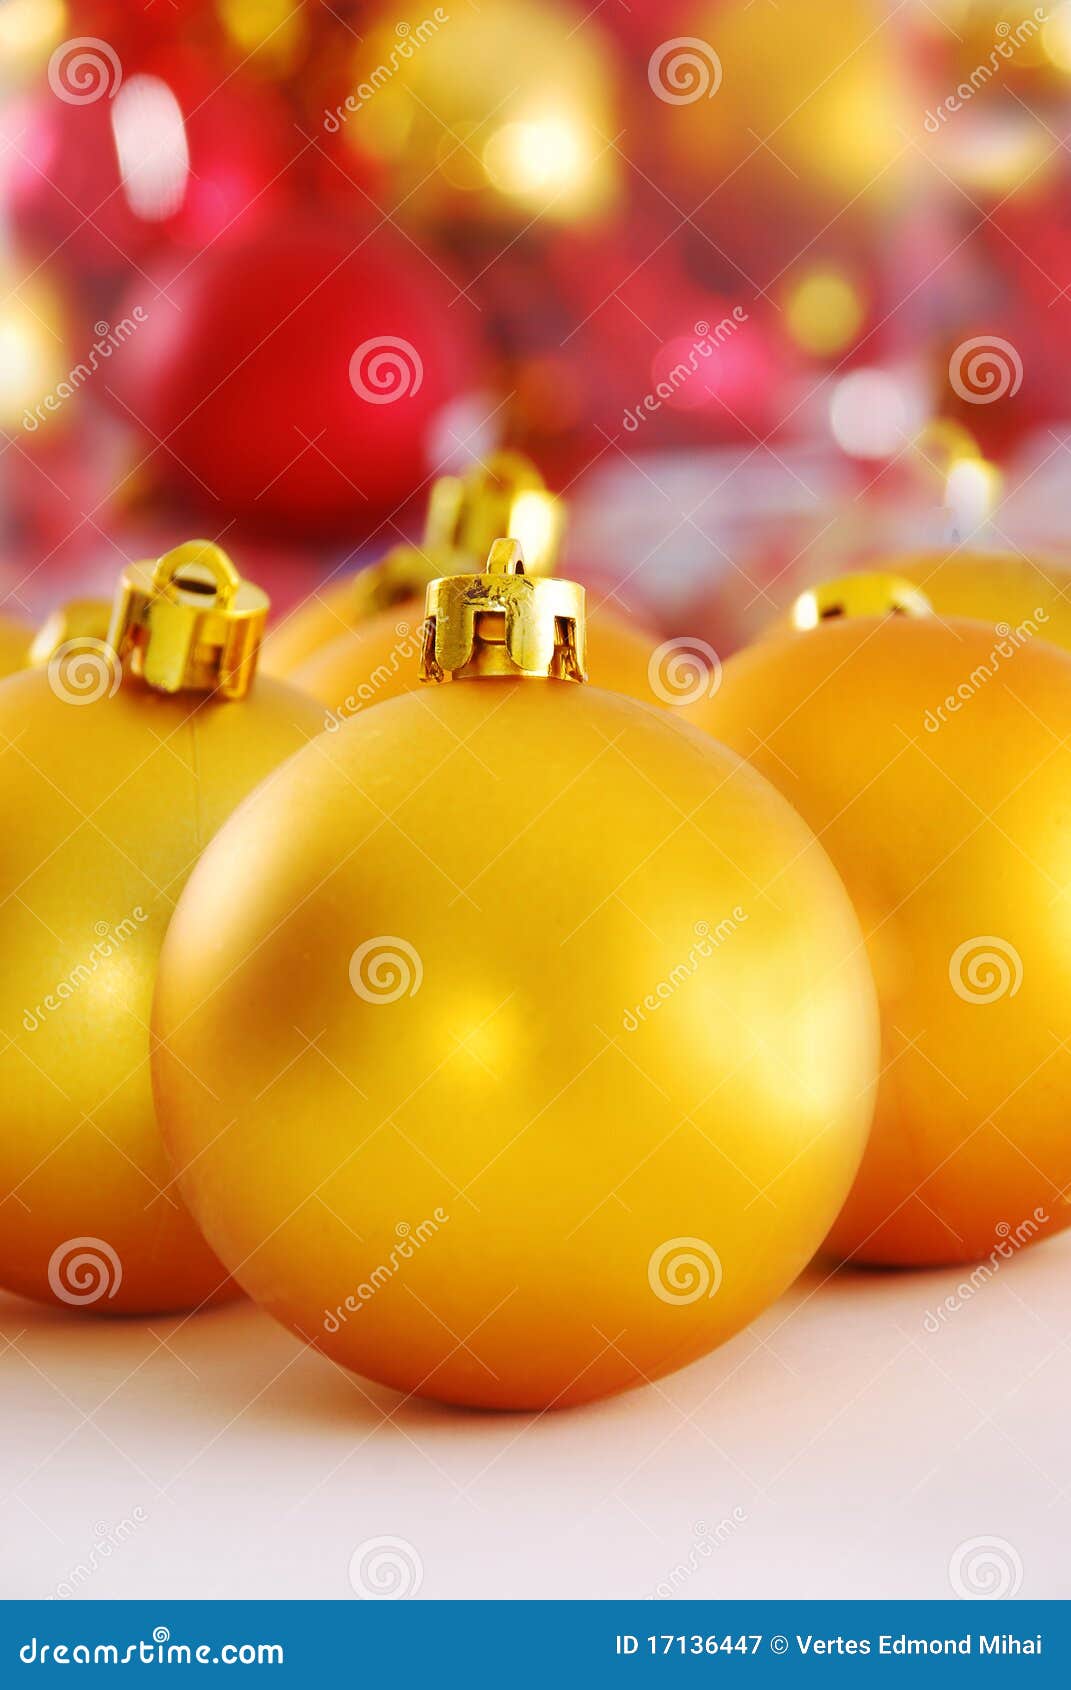 Yellow christmas ball stock image. Image of bulb, decorating - 17136447